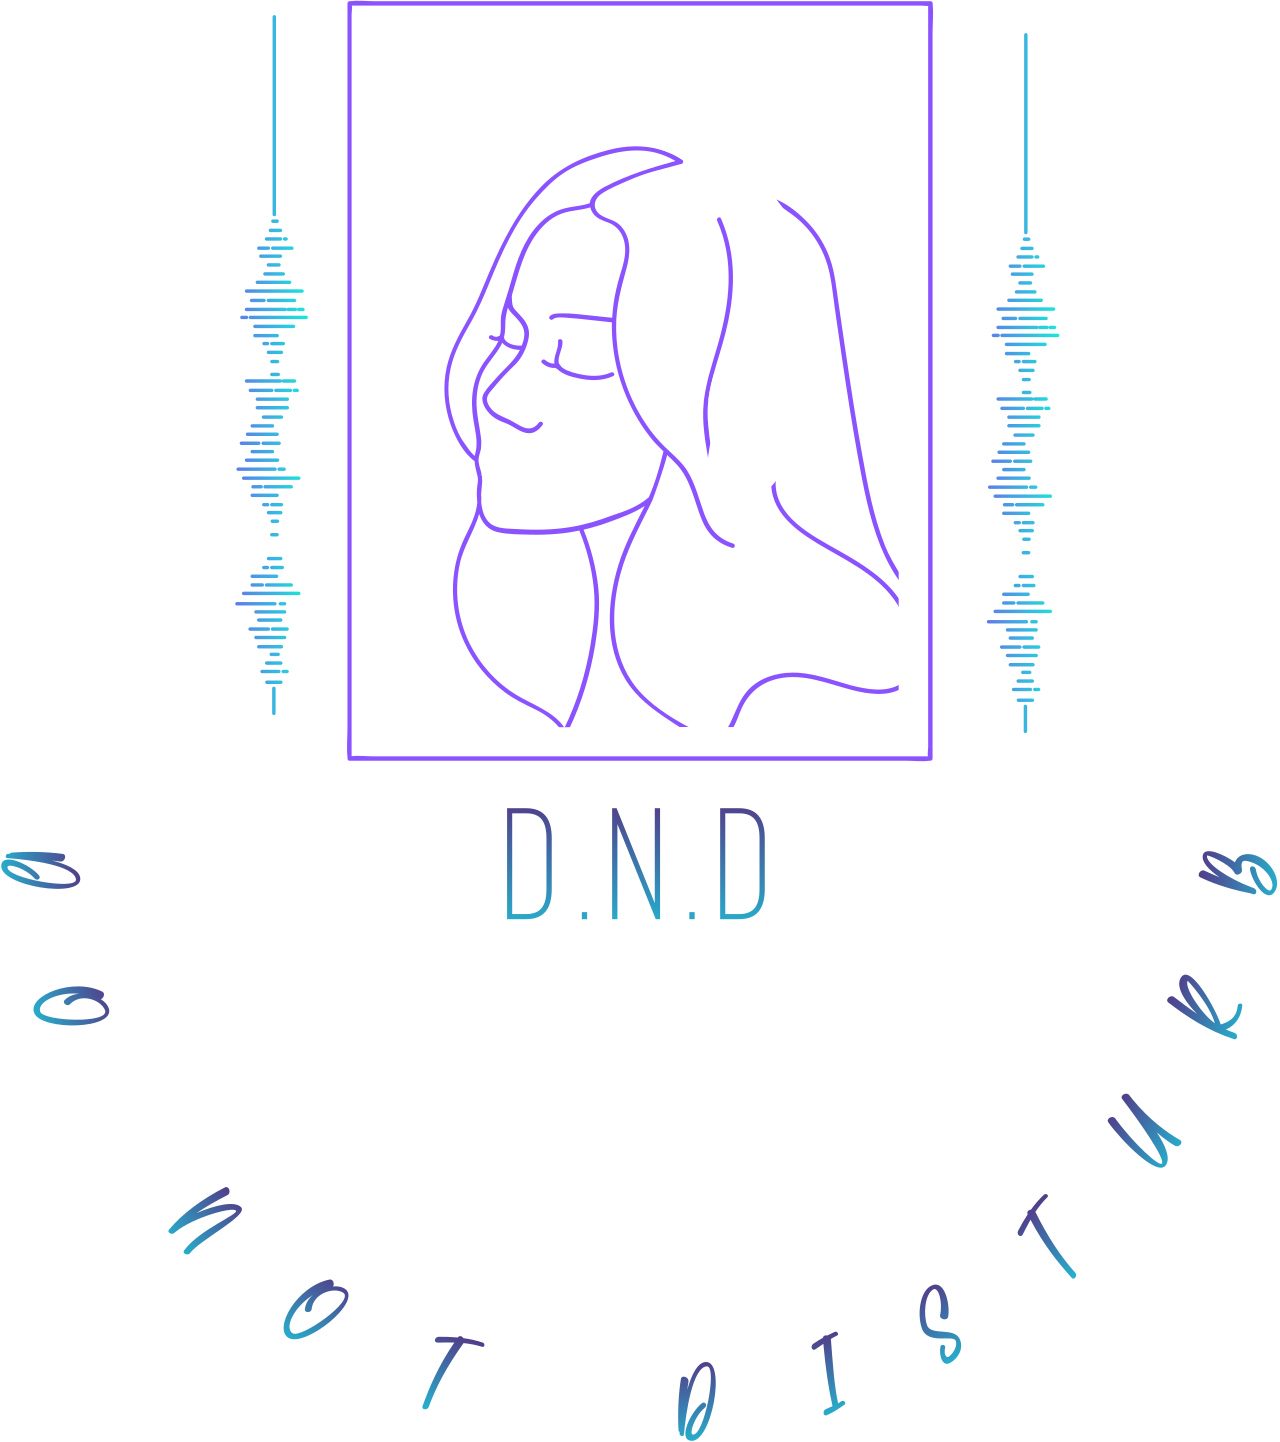 D.N.D's web page